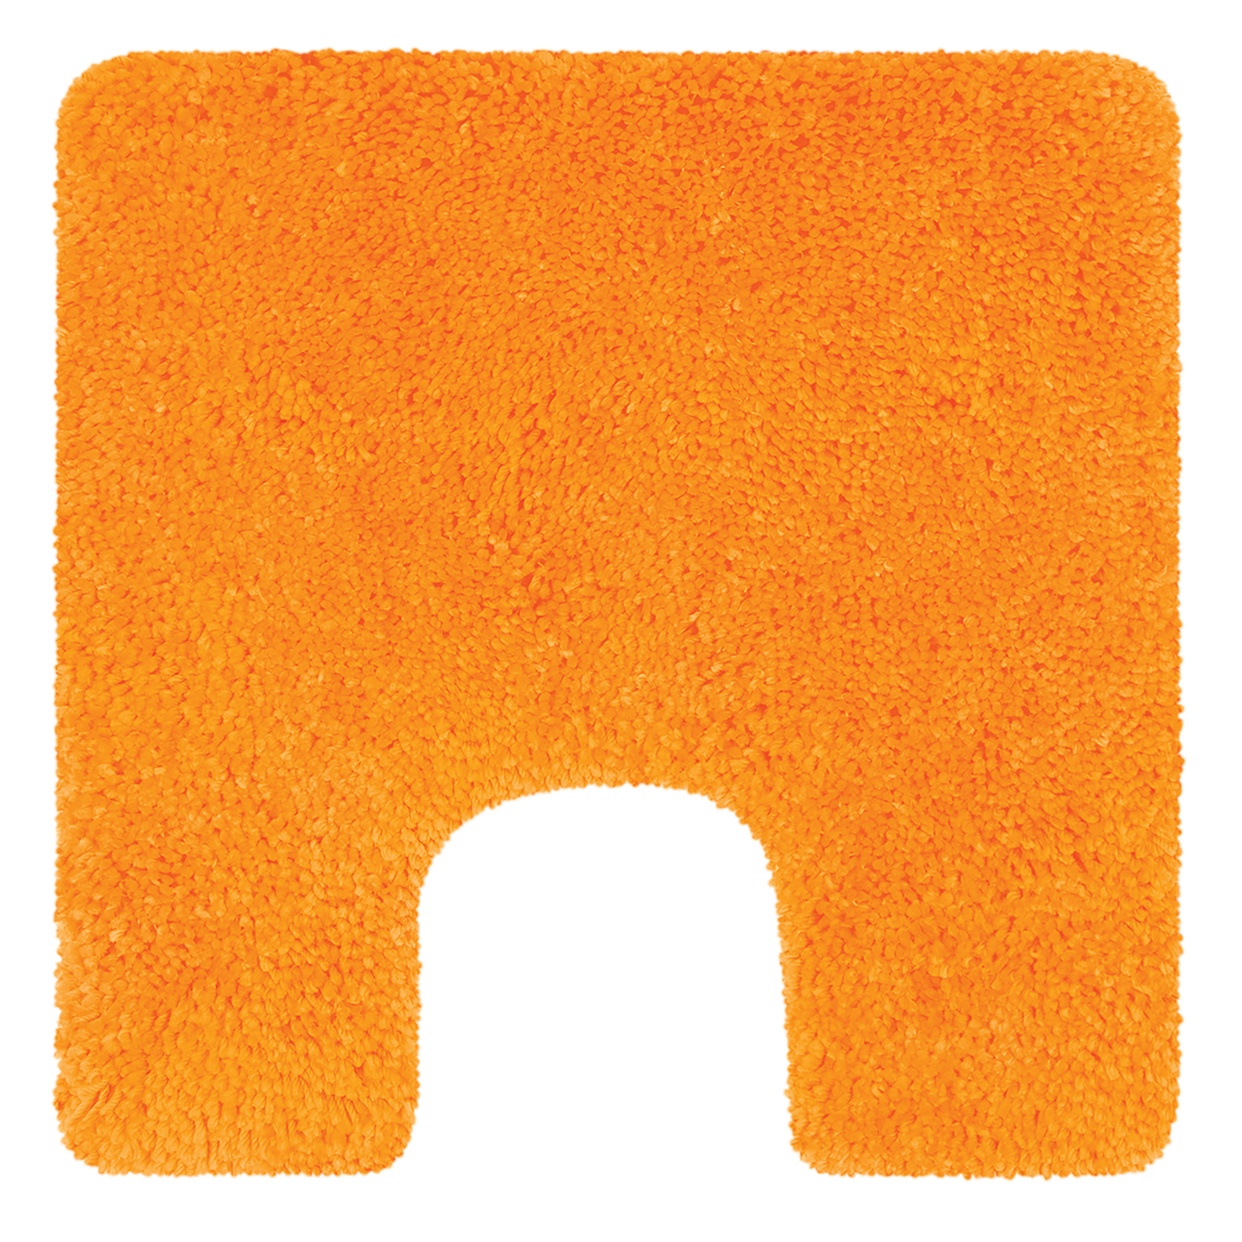 Коврик для туалета Highland оранжевый, 55 x 55 см (Spirella 1013067)